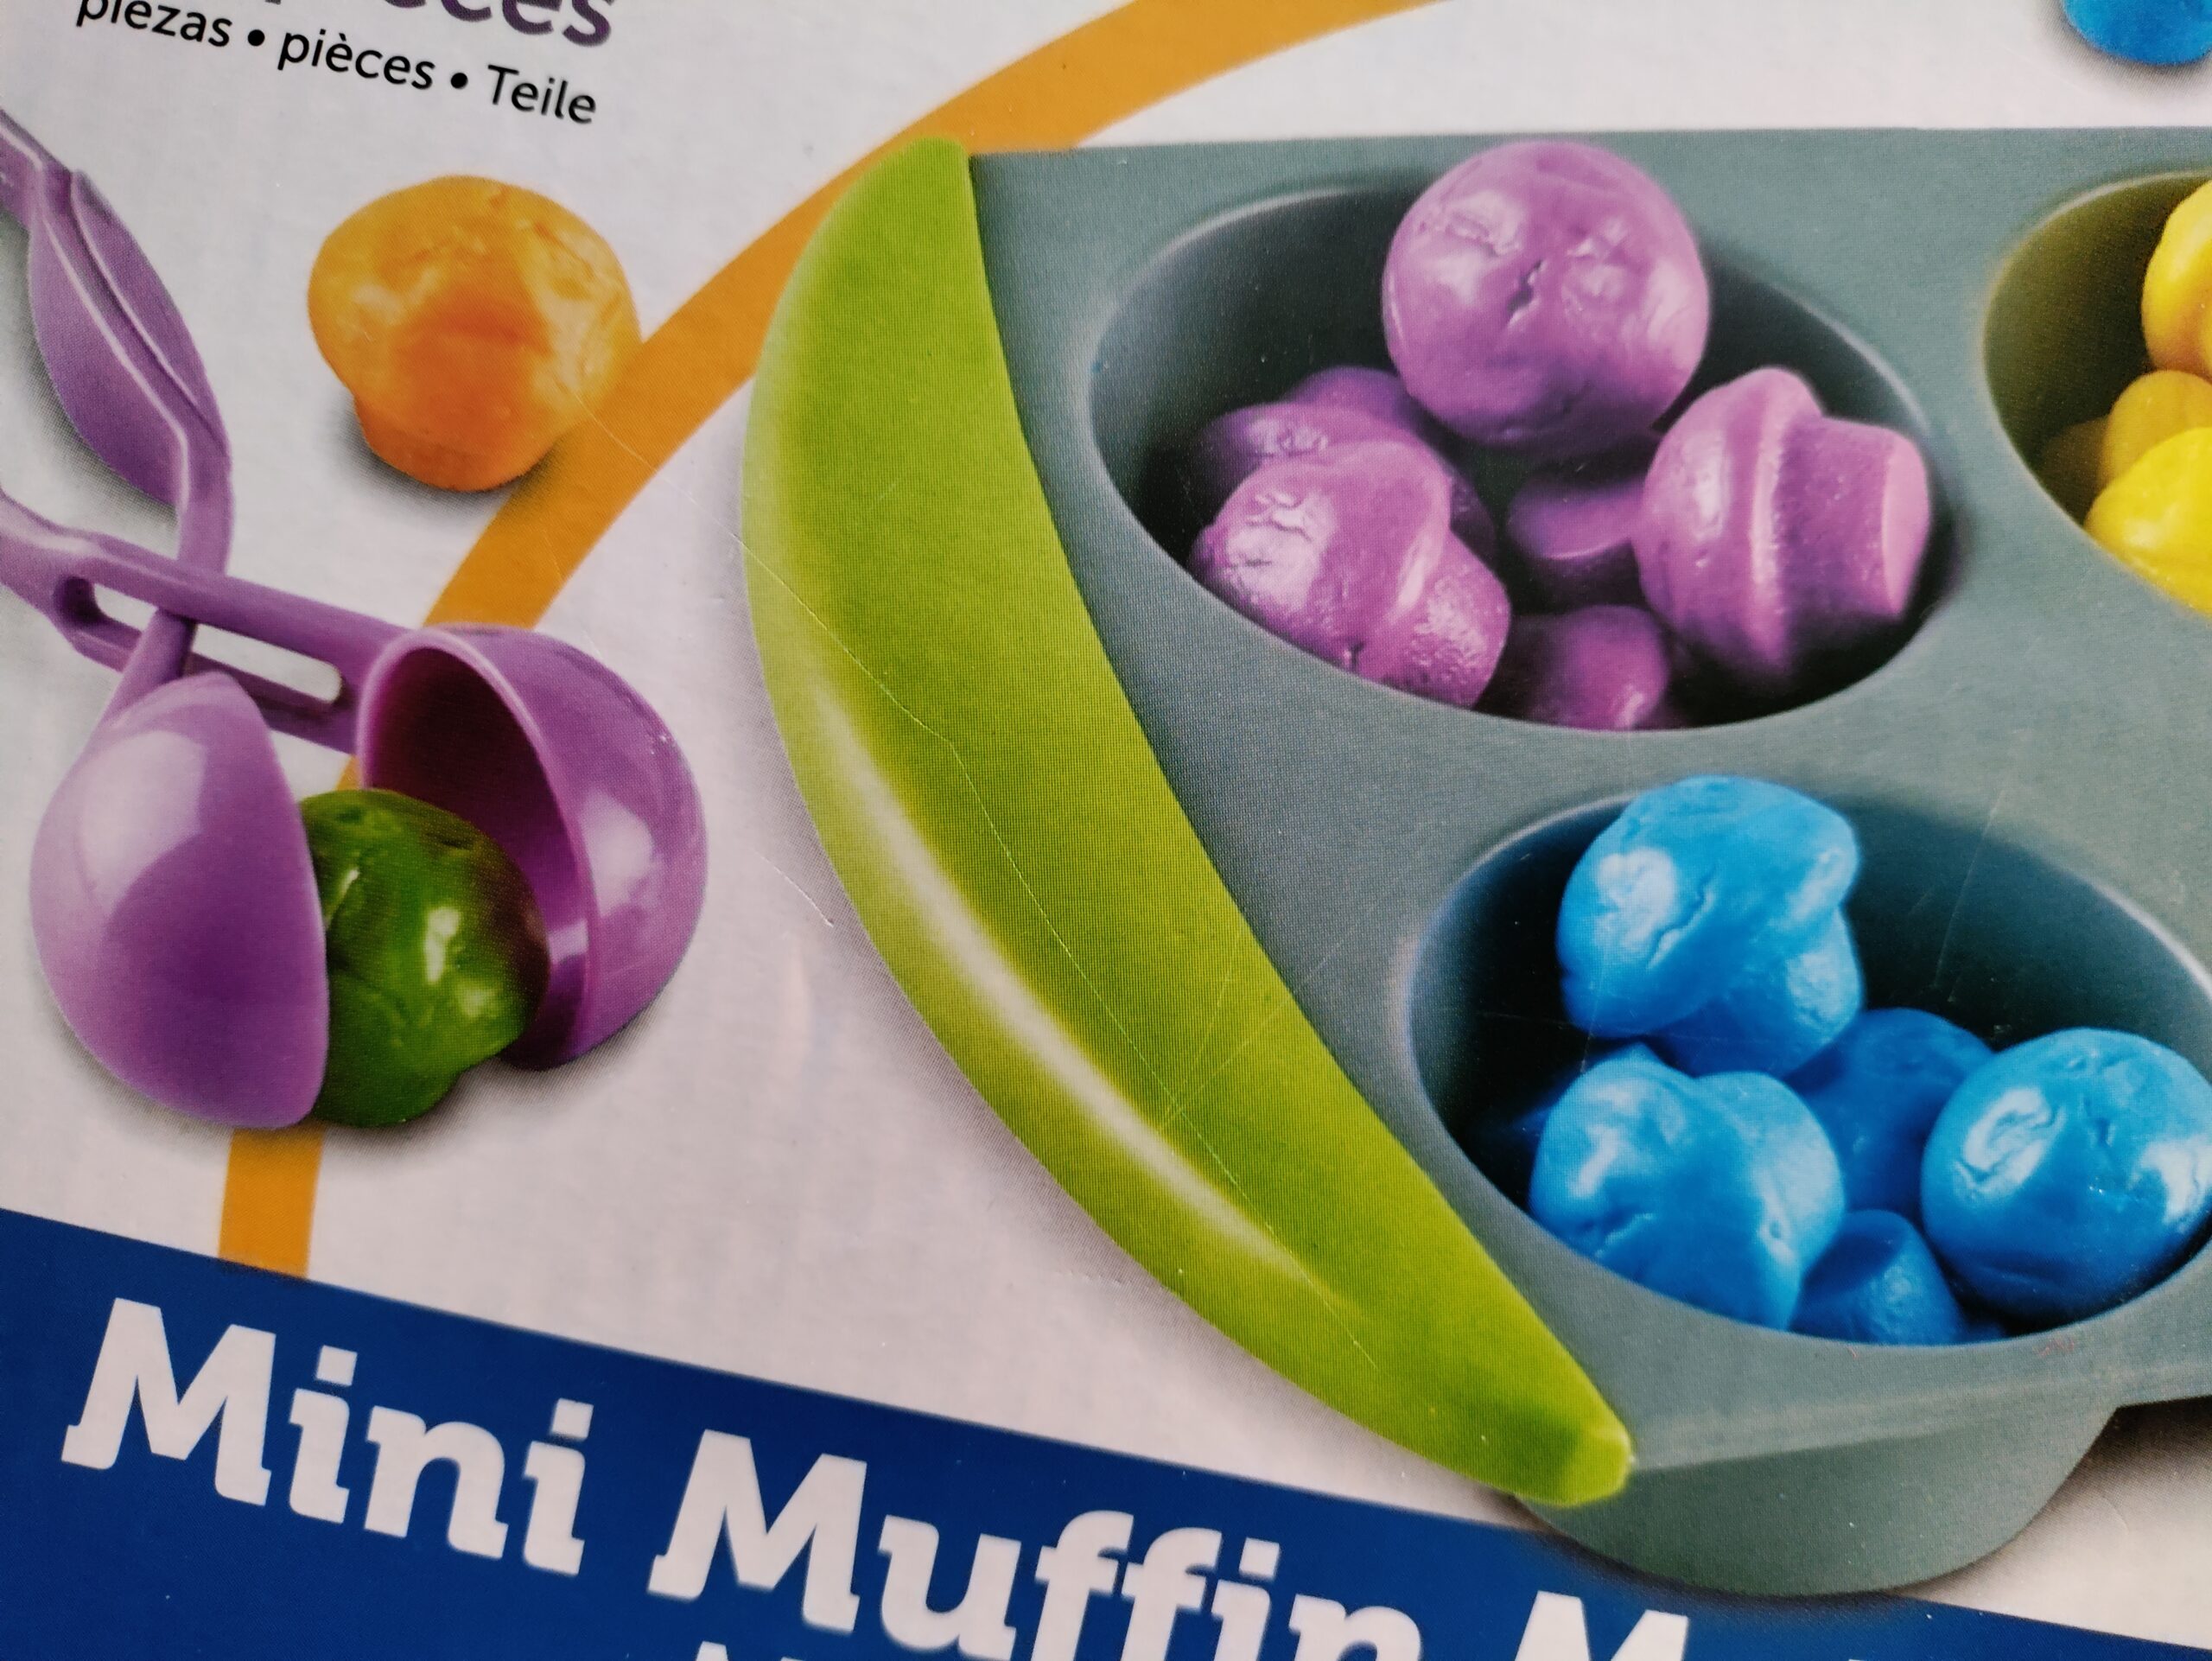 mini-muffin-match-up-rbatnq